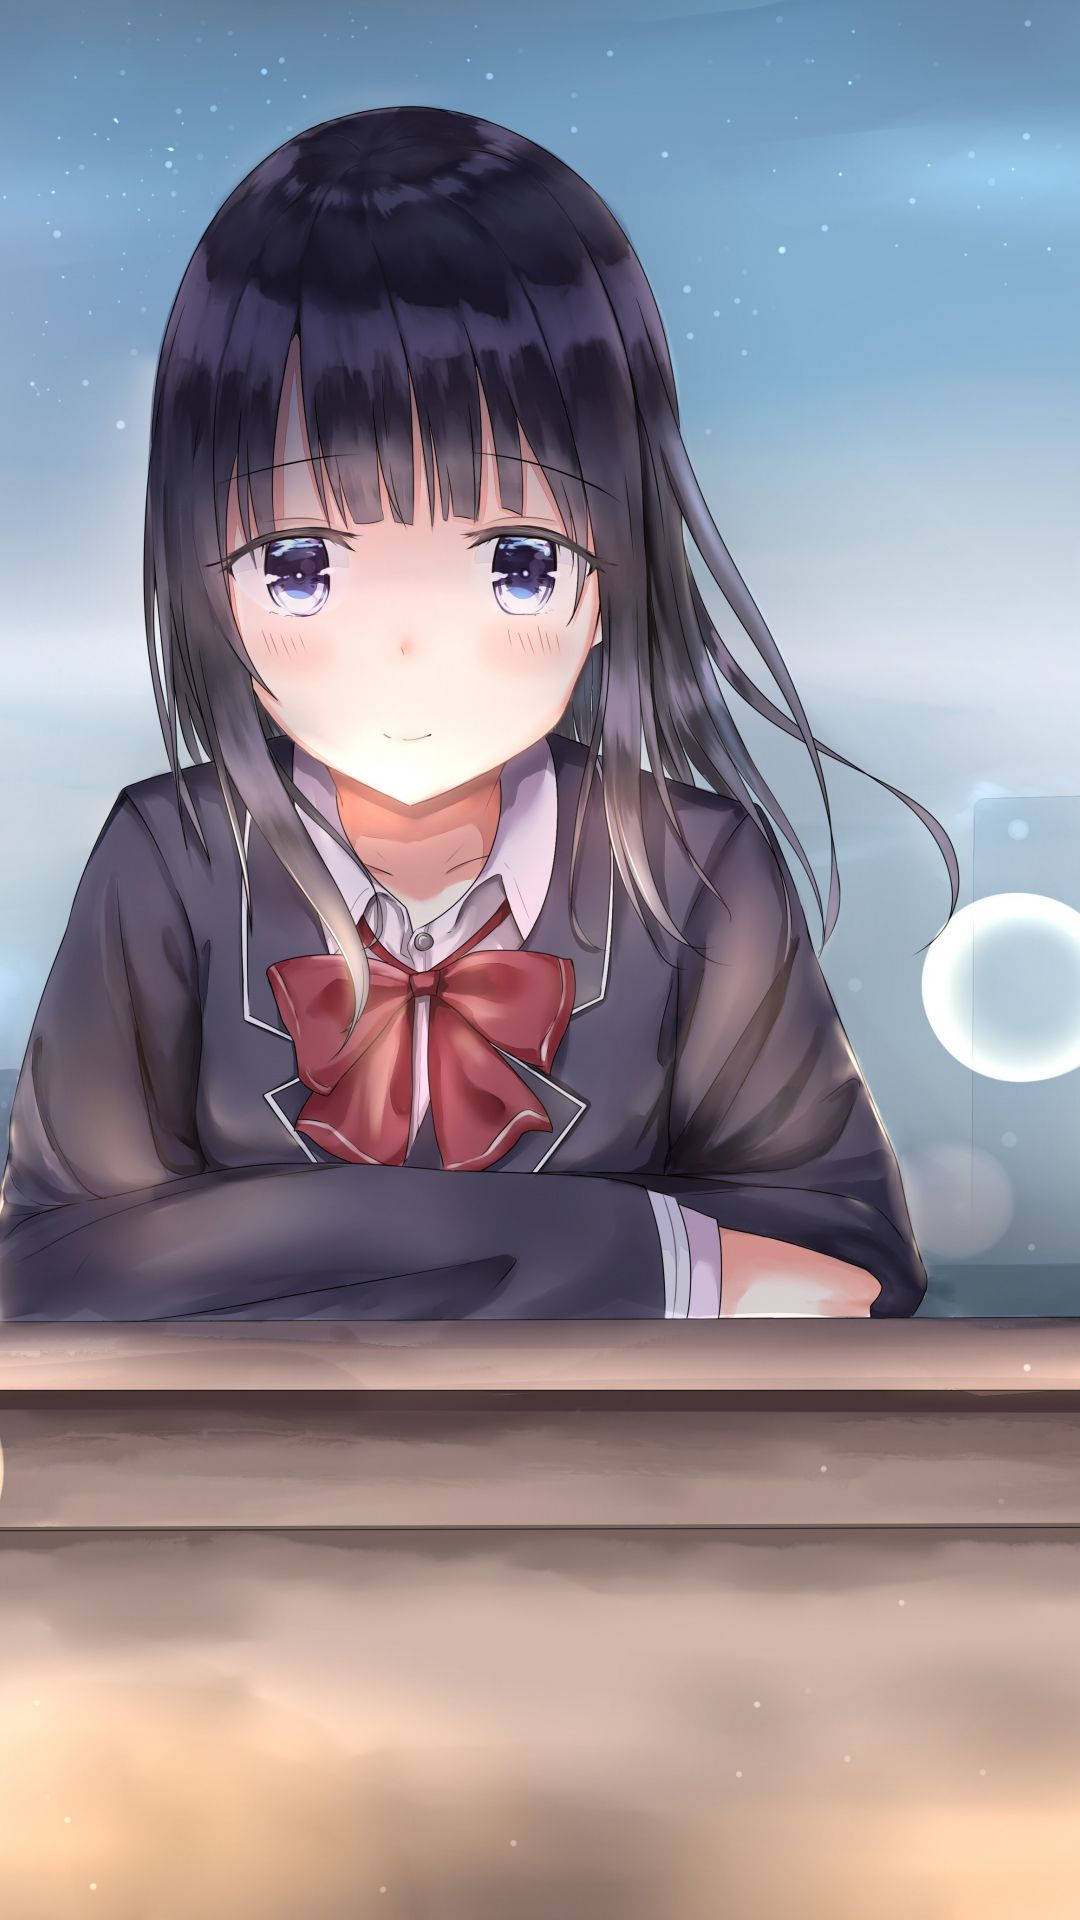 Blushing Sad Anime Girl Background